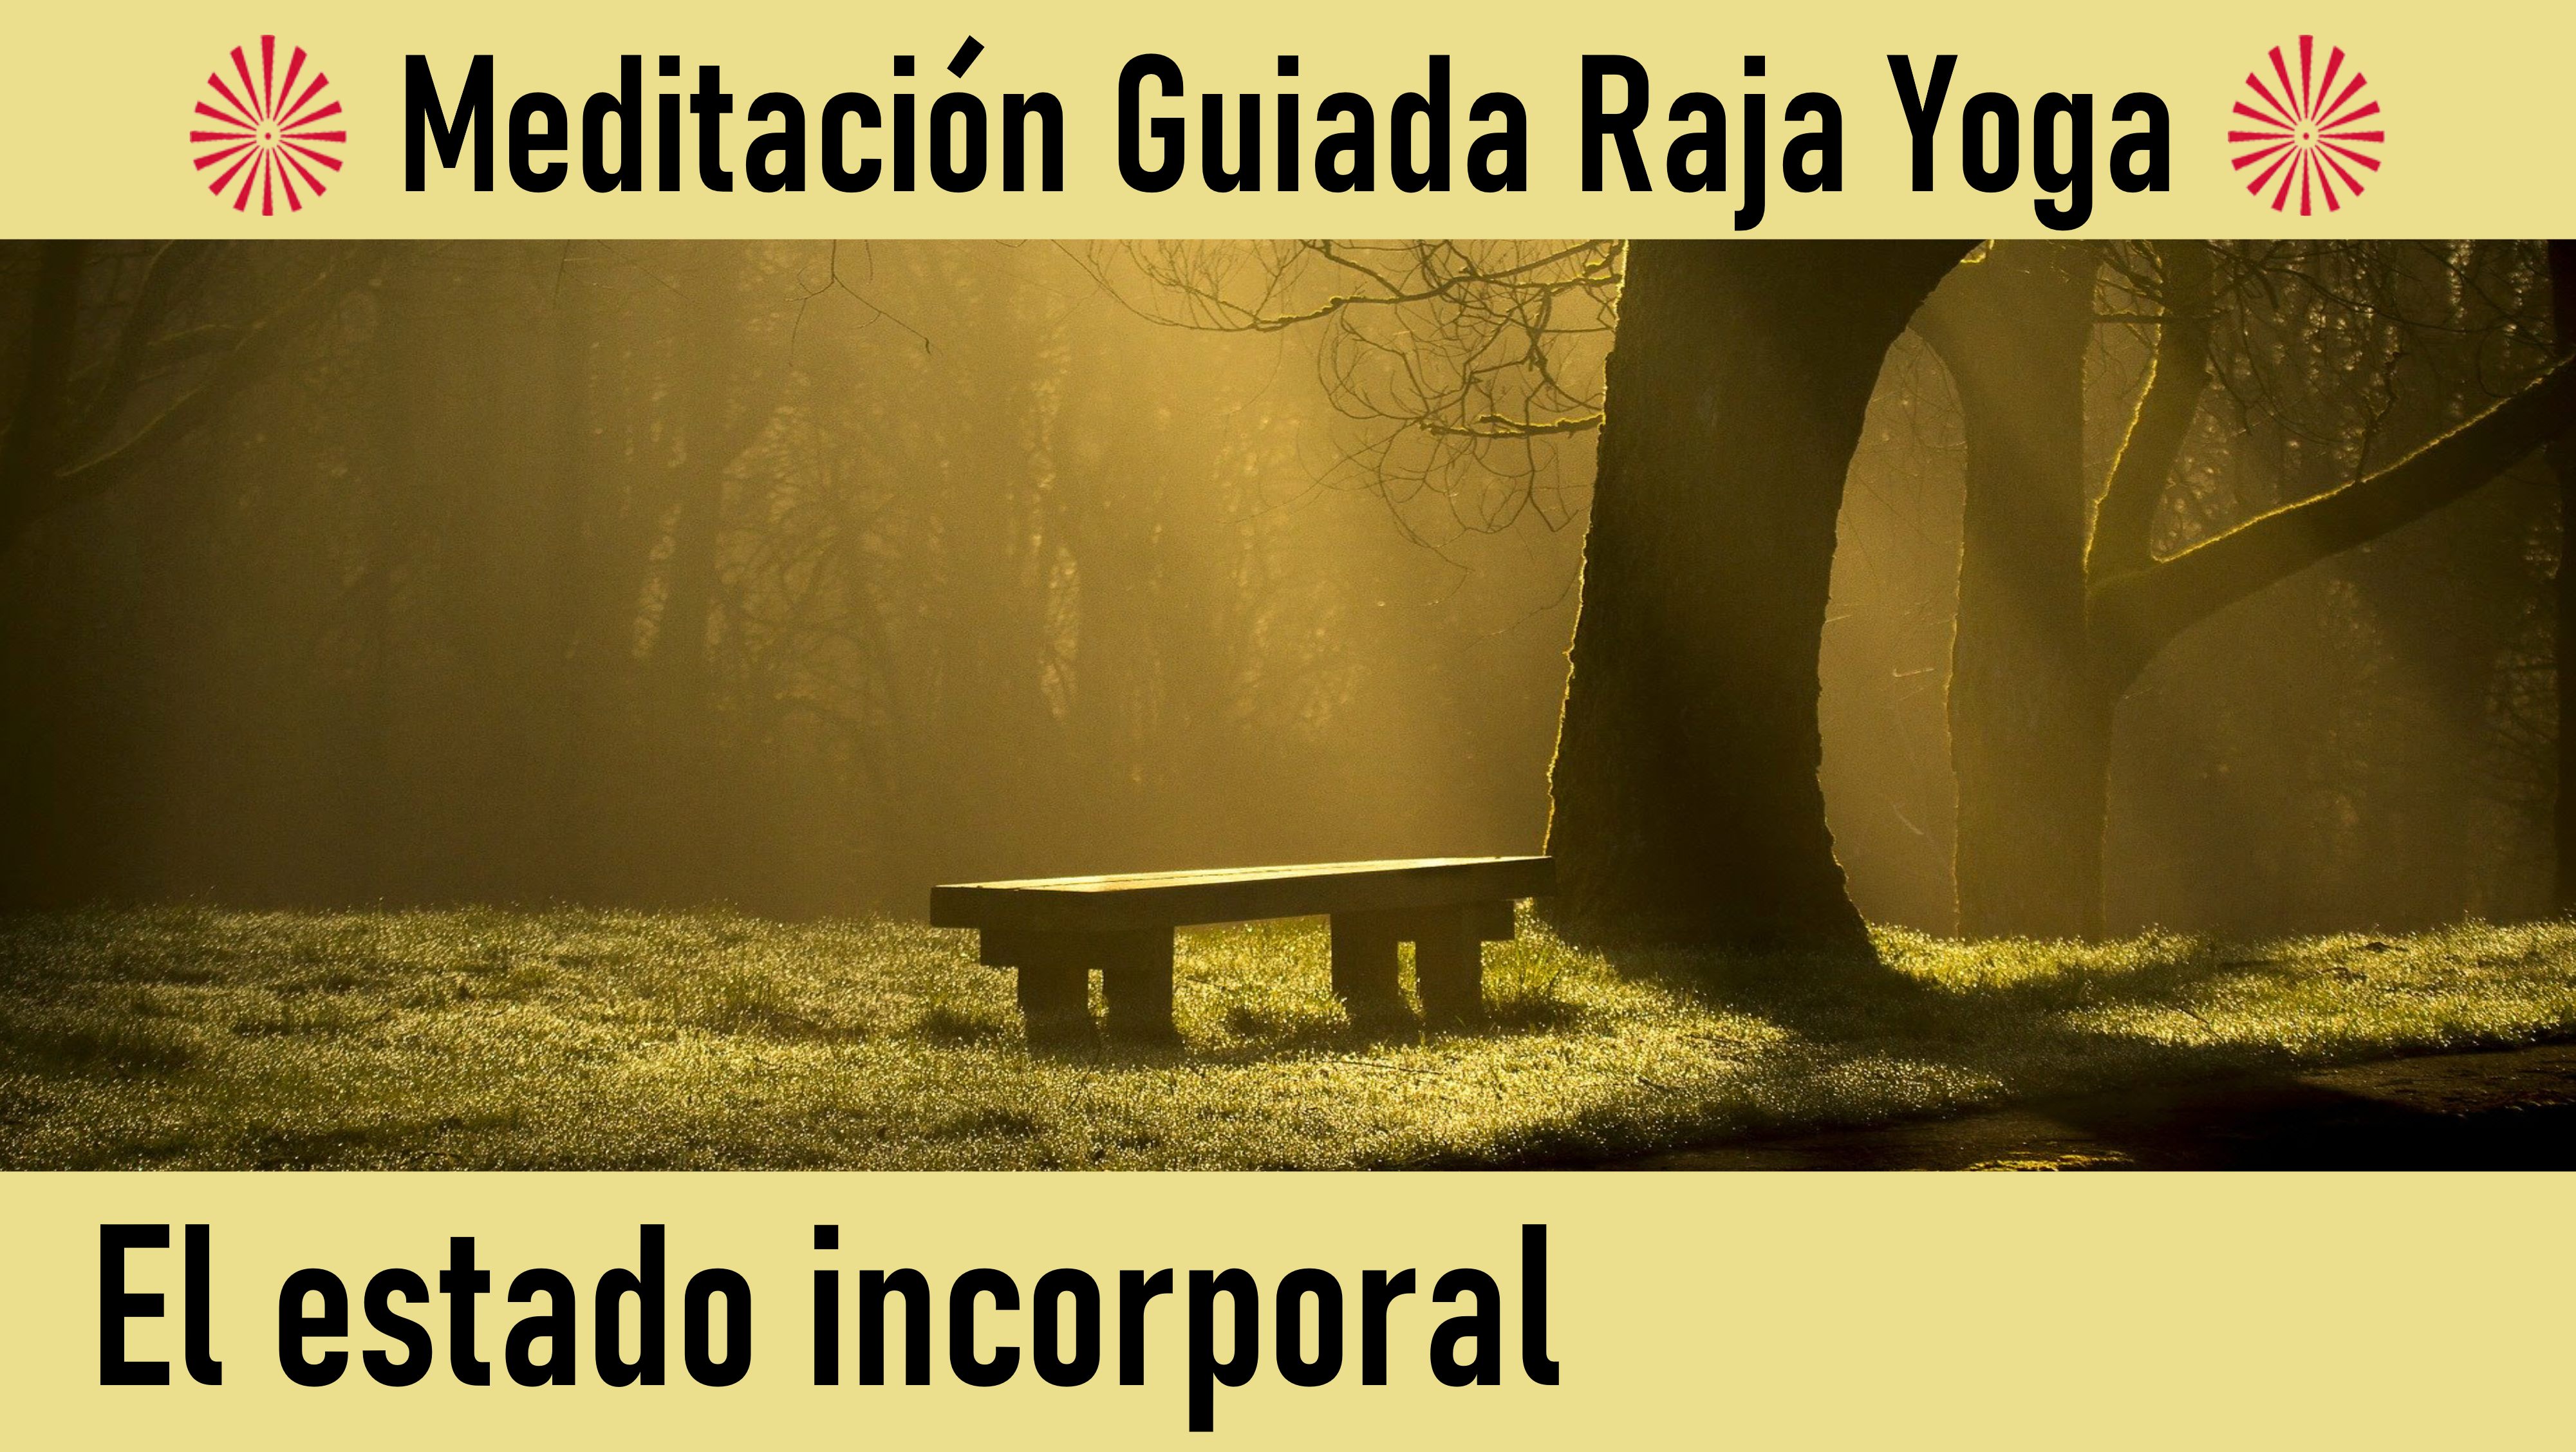 Meditación Raja Yoga: El estado incorporal (10 Junio 2020) On-line desde Madrid